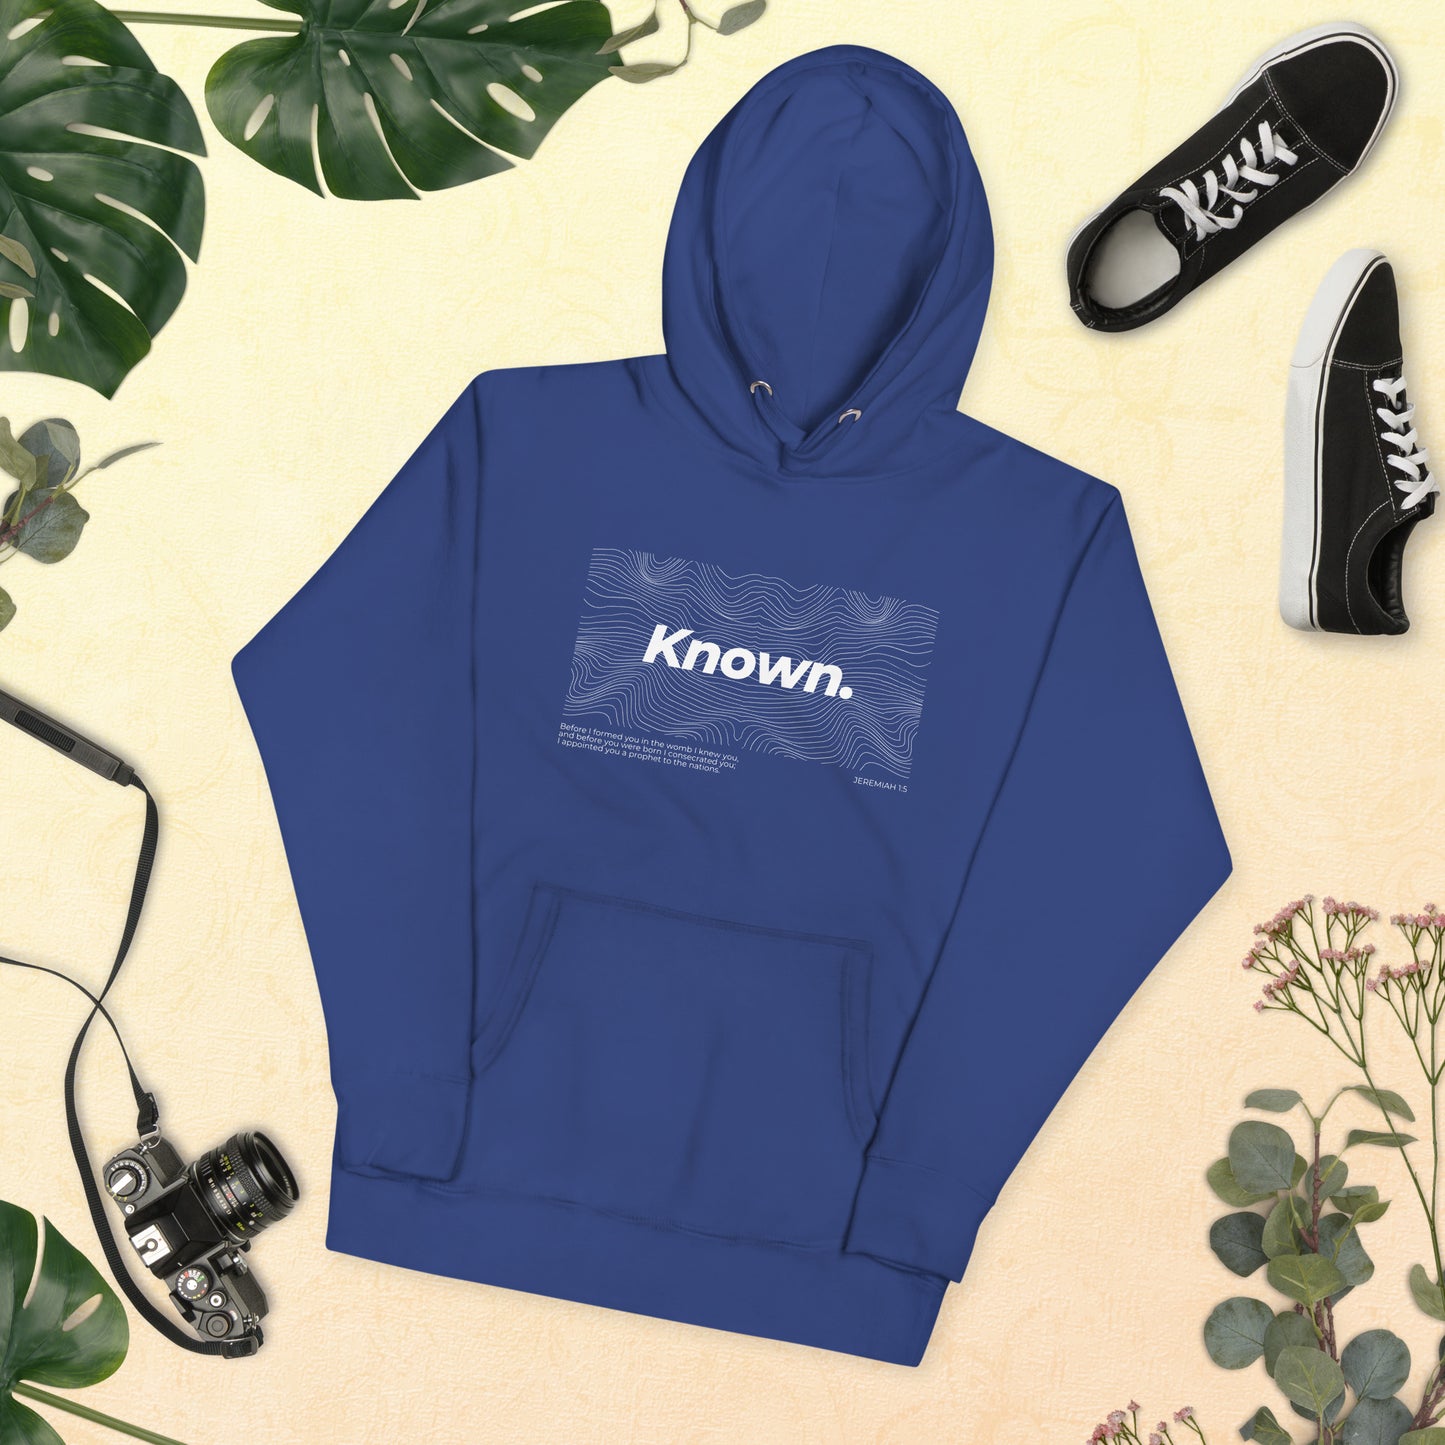 "Known" - Unisex Hoodie